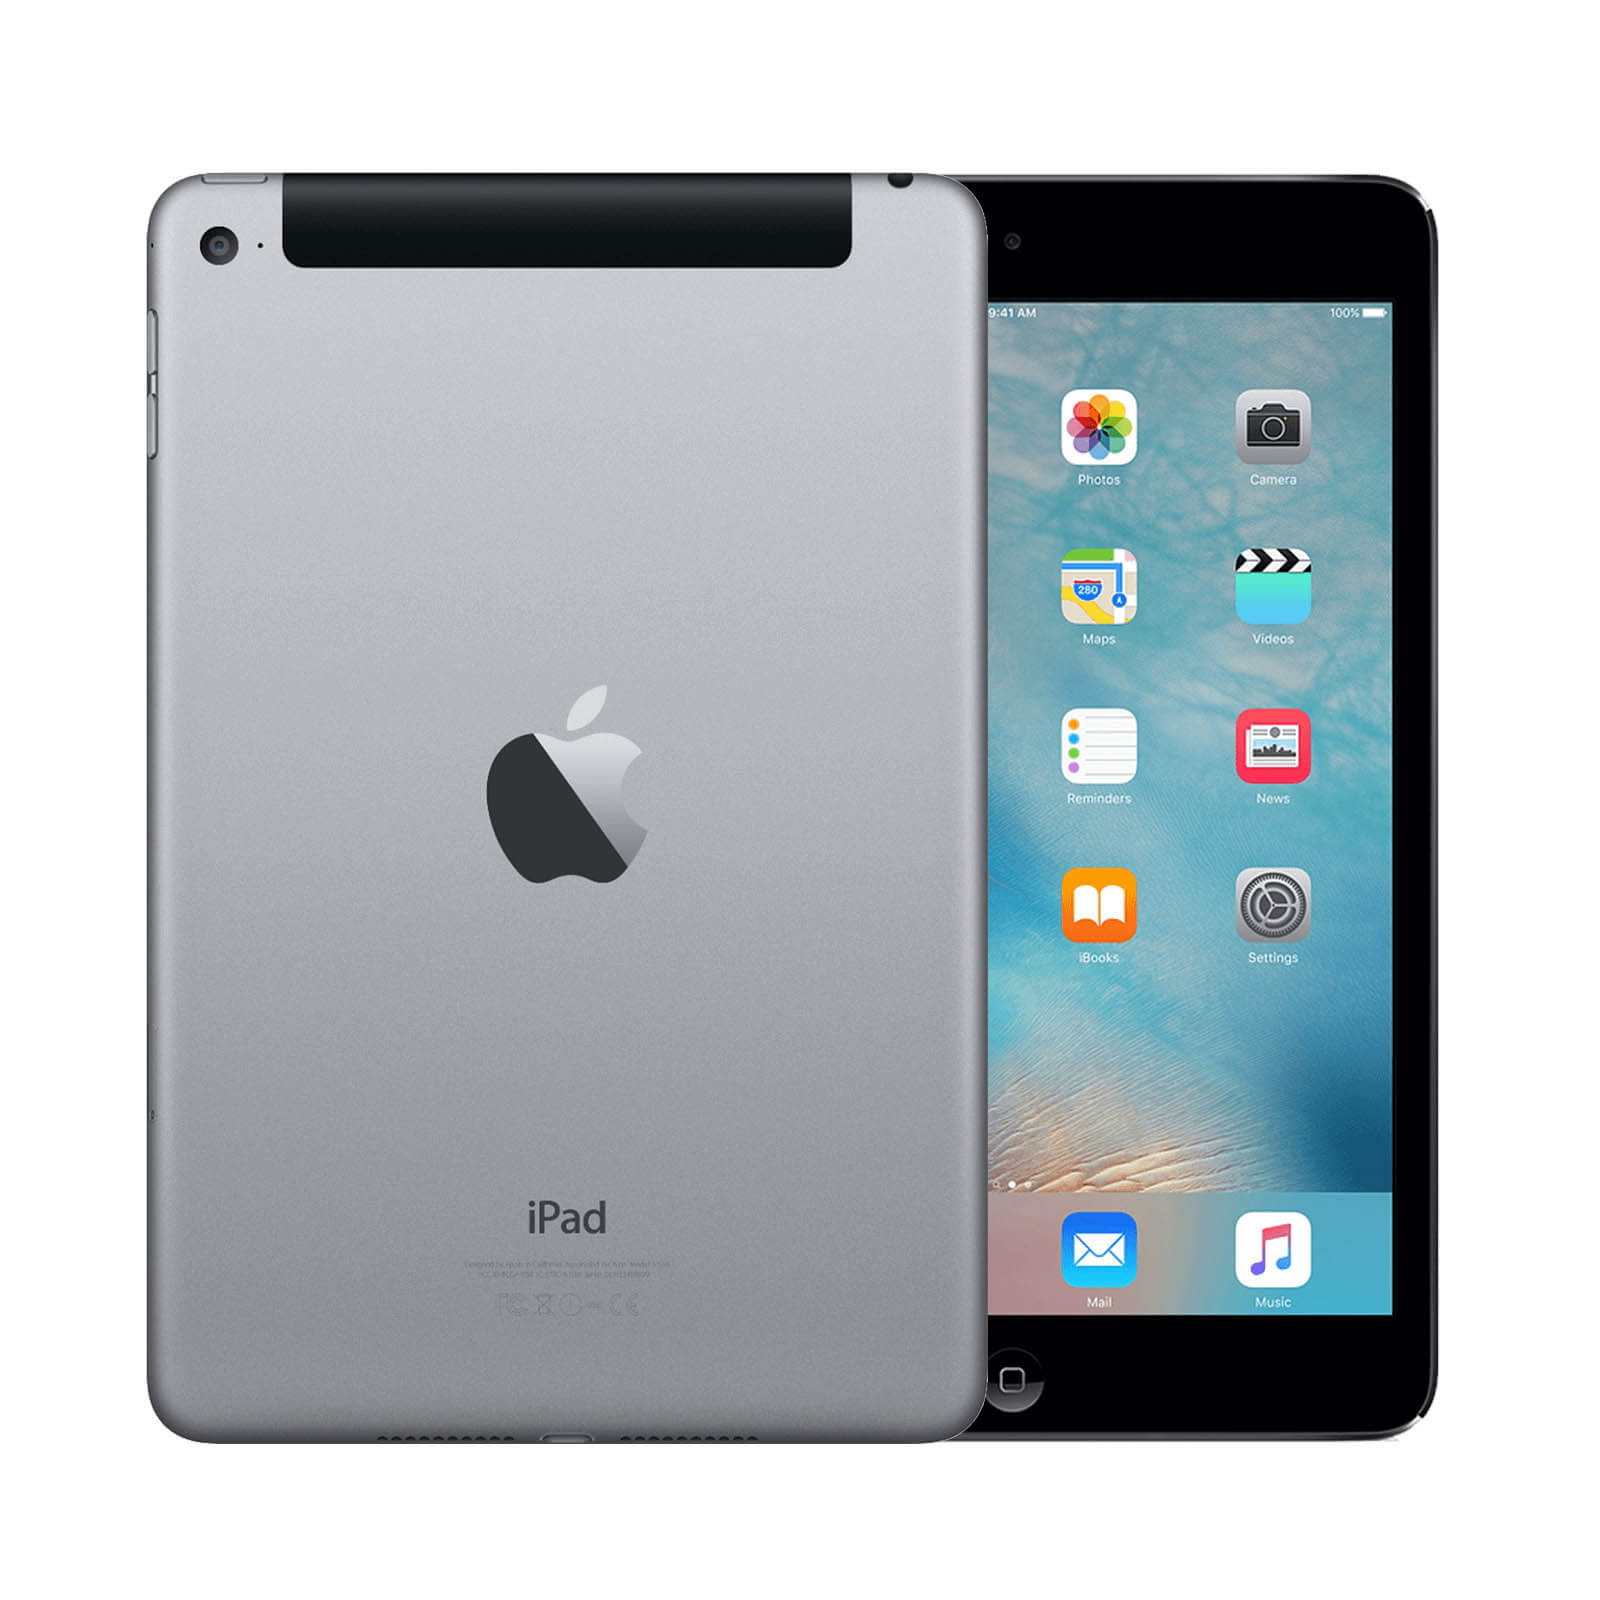 Apple iPad Mini 4 64GB Space Grey WiFi & Cellular - Very Good 64GB Space Grey Very Good